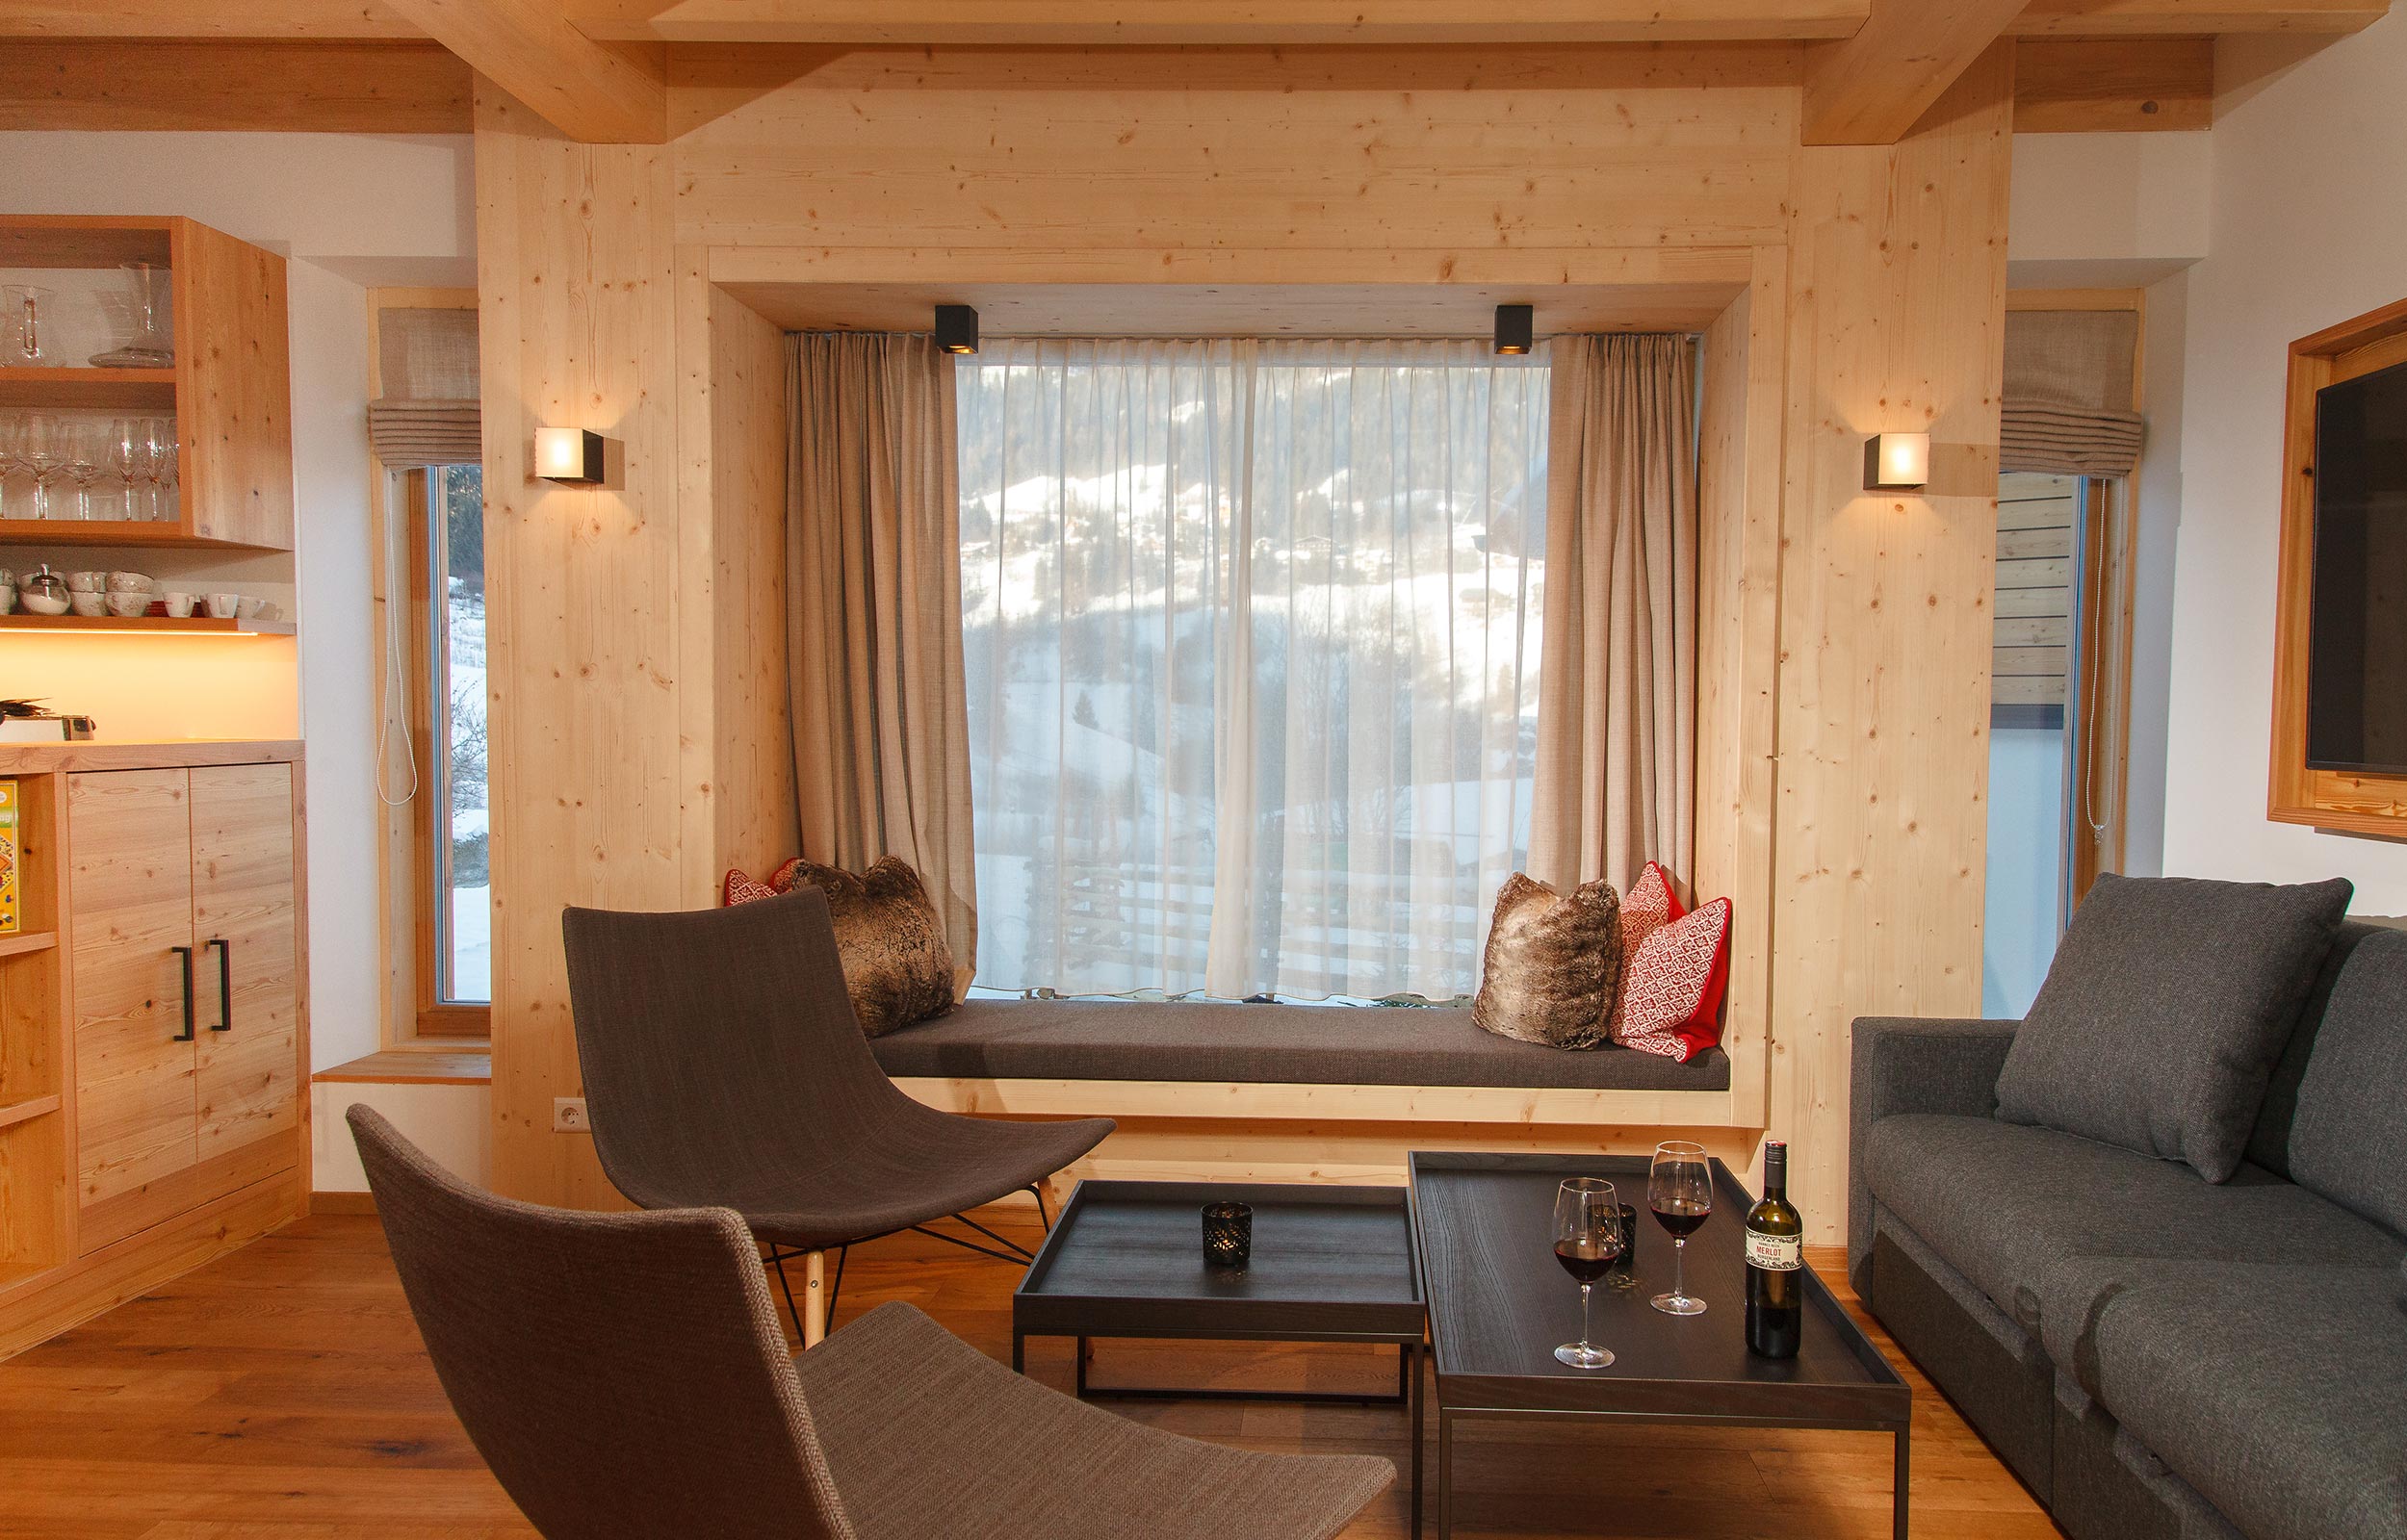 Wohnzimmer mit dunkeln Sofa und Panoramafenster in Kärnten